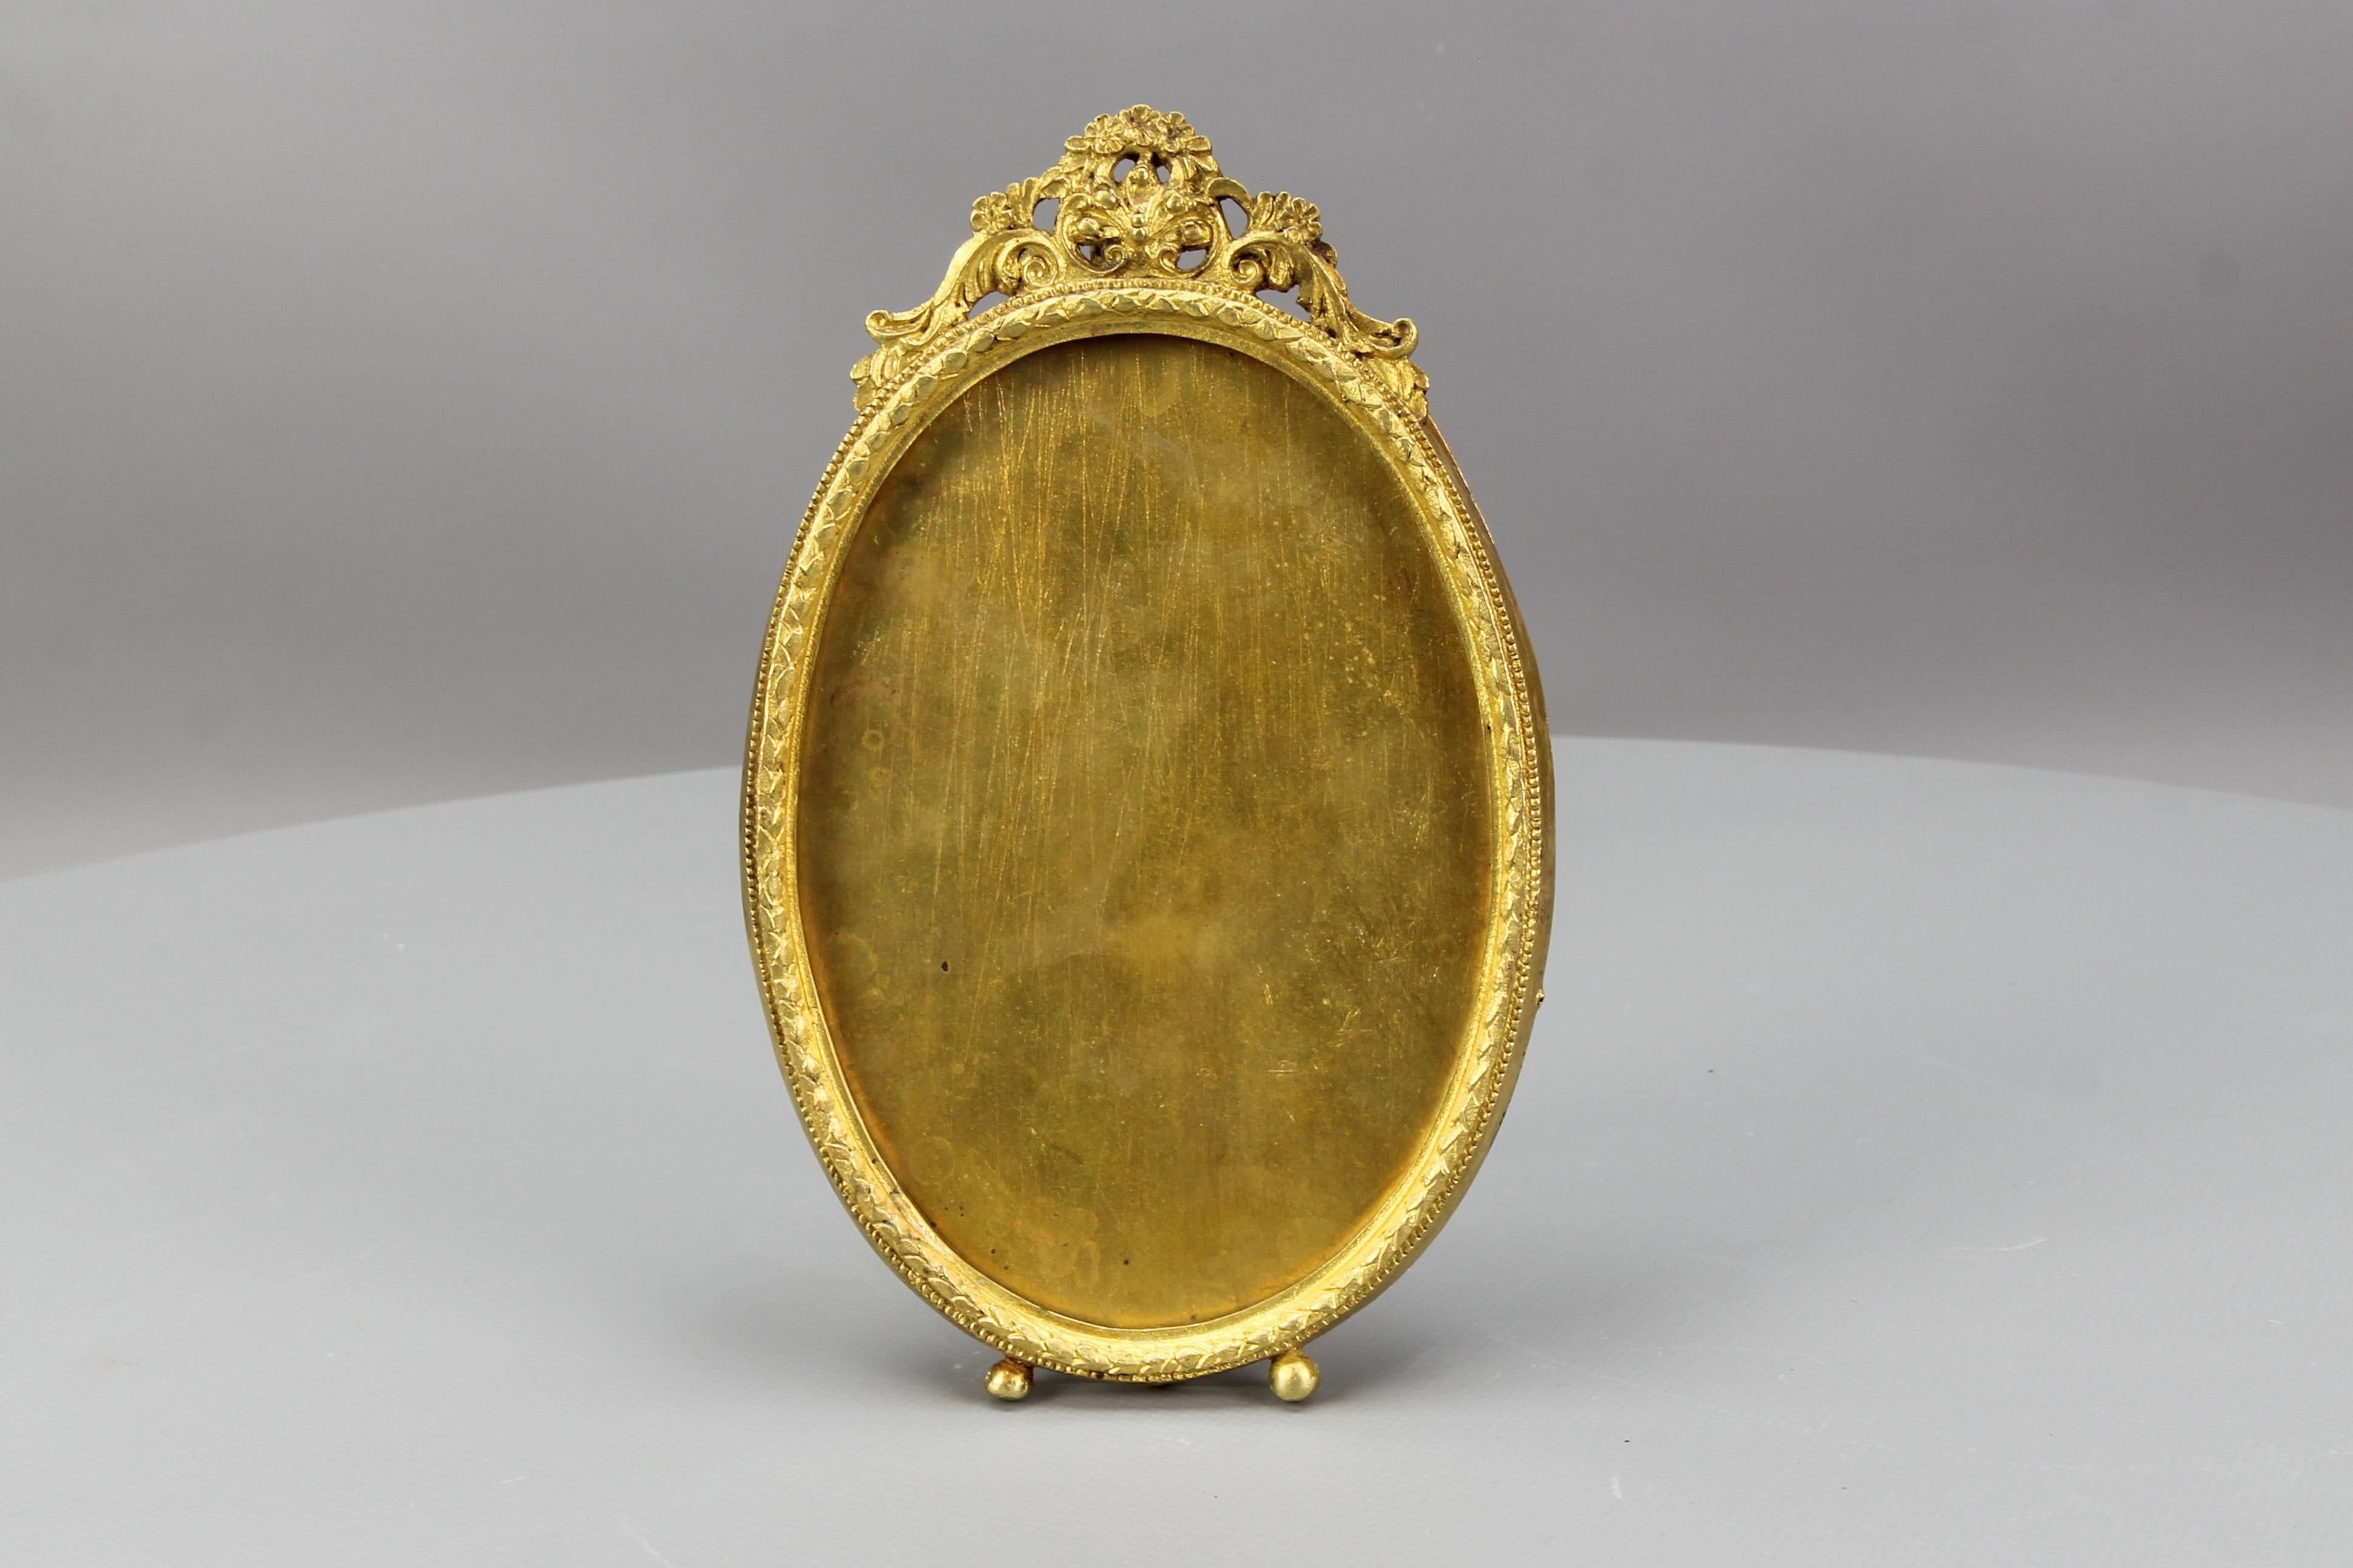 Cadre de chevalet ovale en bronze de style Louis XVI pour photos ou images, datant d'environ les années 1900.
Cet adorable cadre photo est fabriqué en bronze et en laiton et possède un pied de support de chevalet au dos. Décorée de fleurs et de